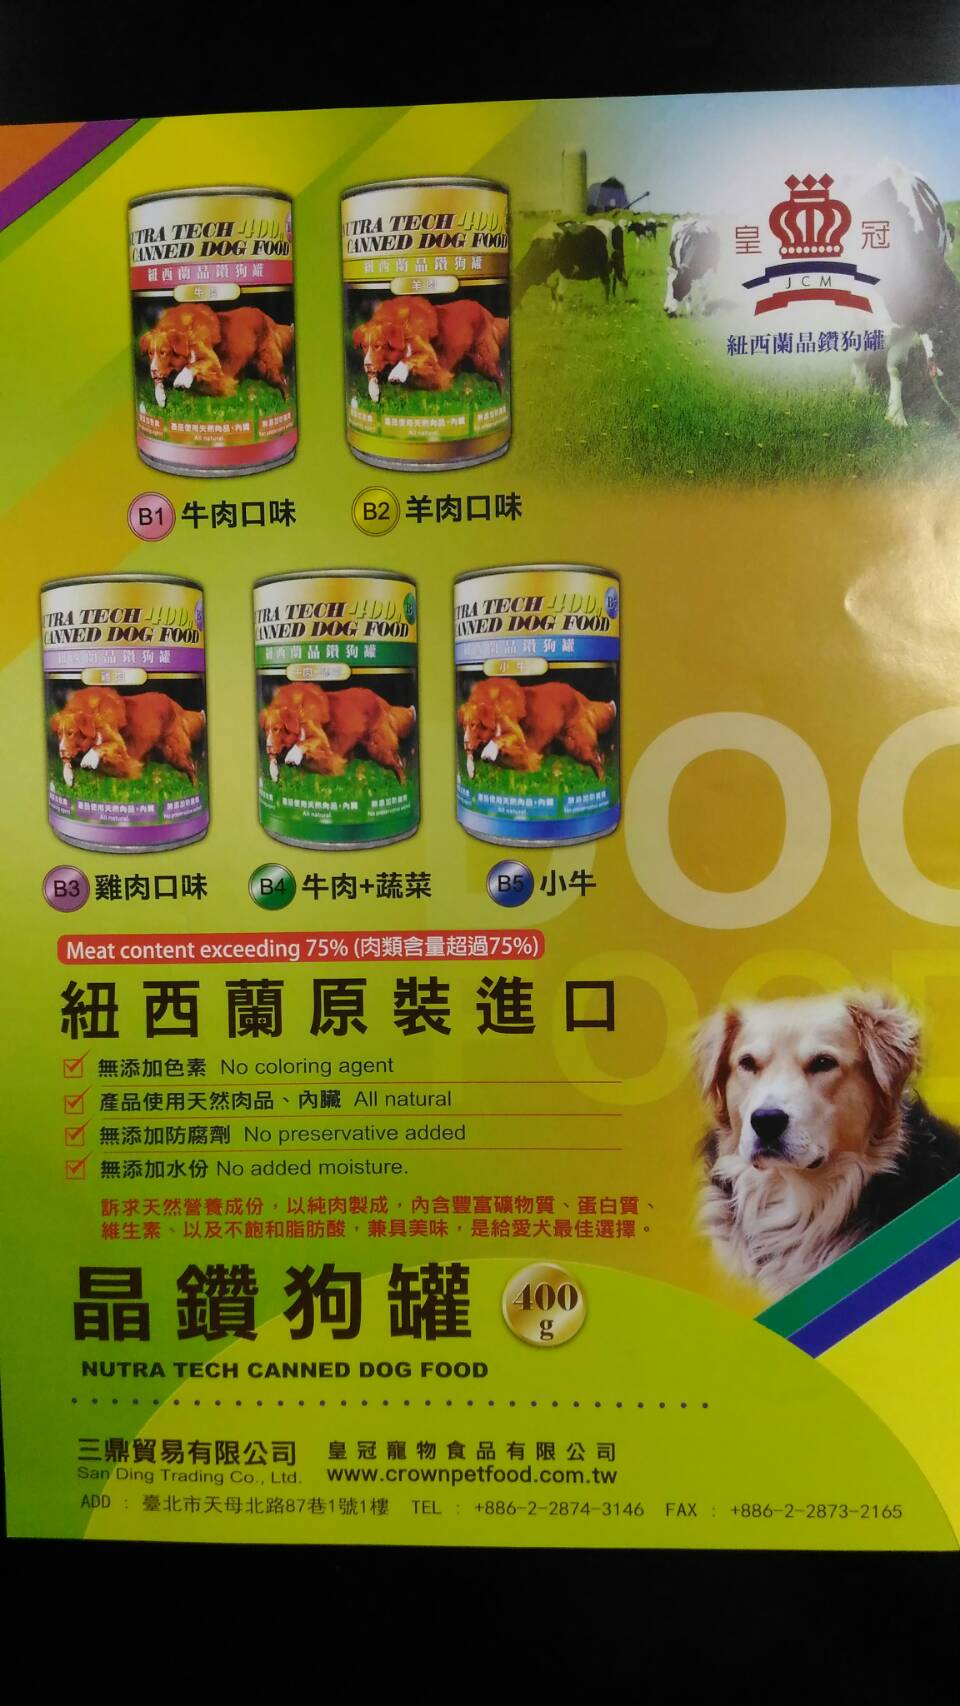 紐西蘭晶鑽狗罐（羊肉）
Nutra Tech 400g Canned Dog Food